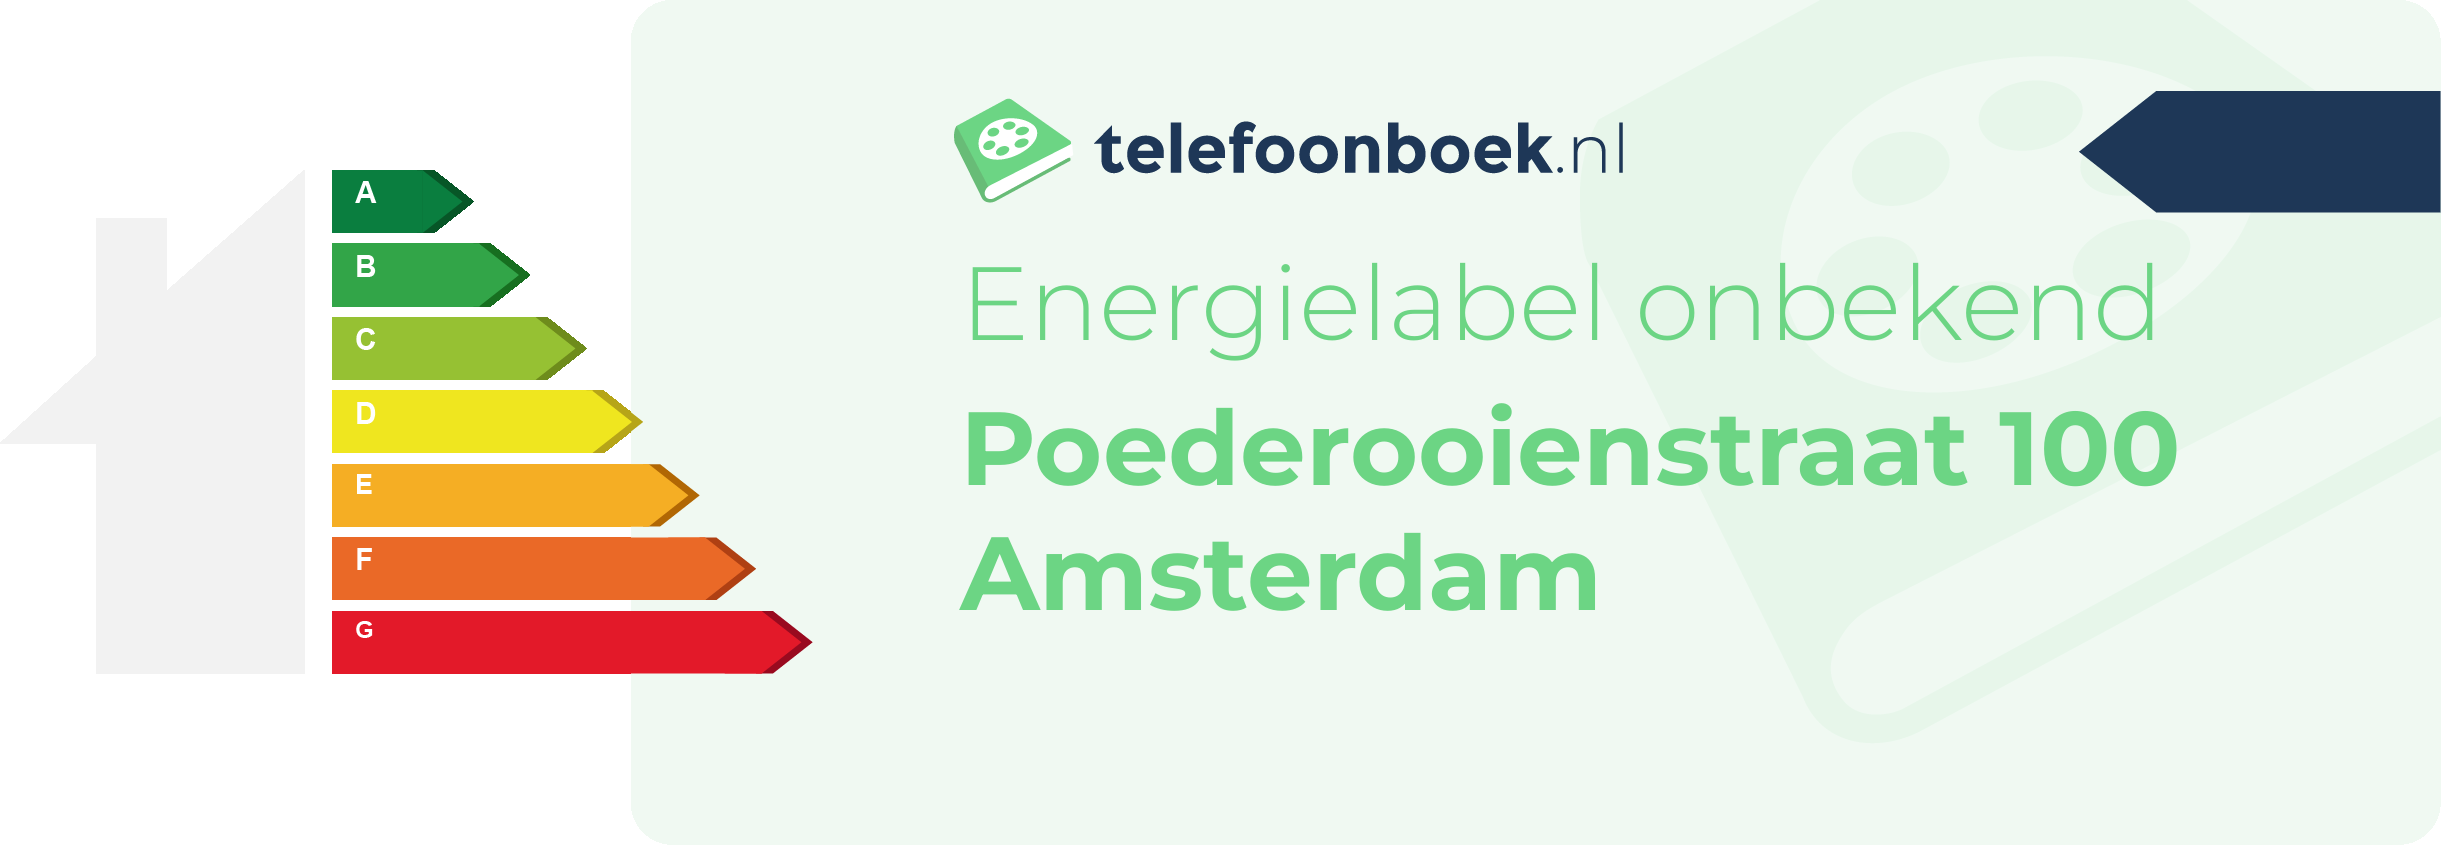 Energielabel Poederooienstraat 100 Amsterdam